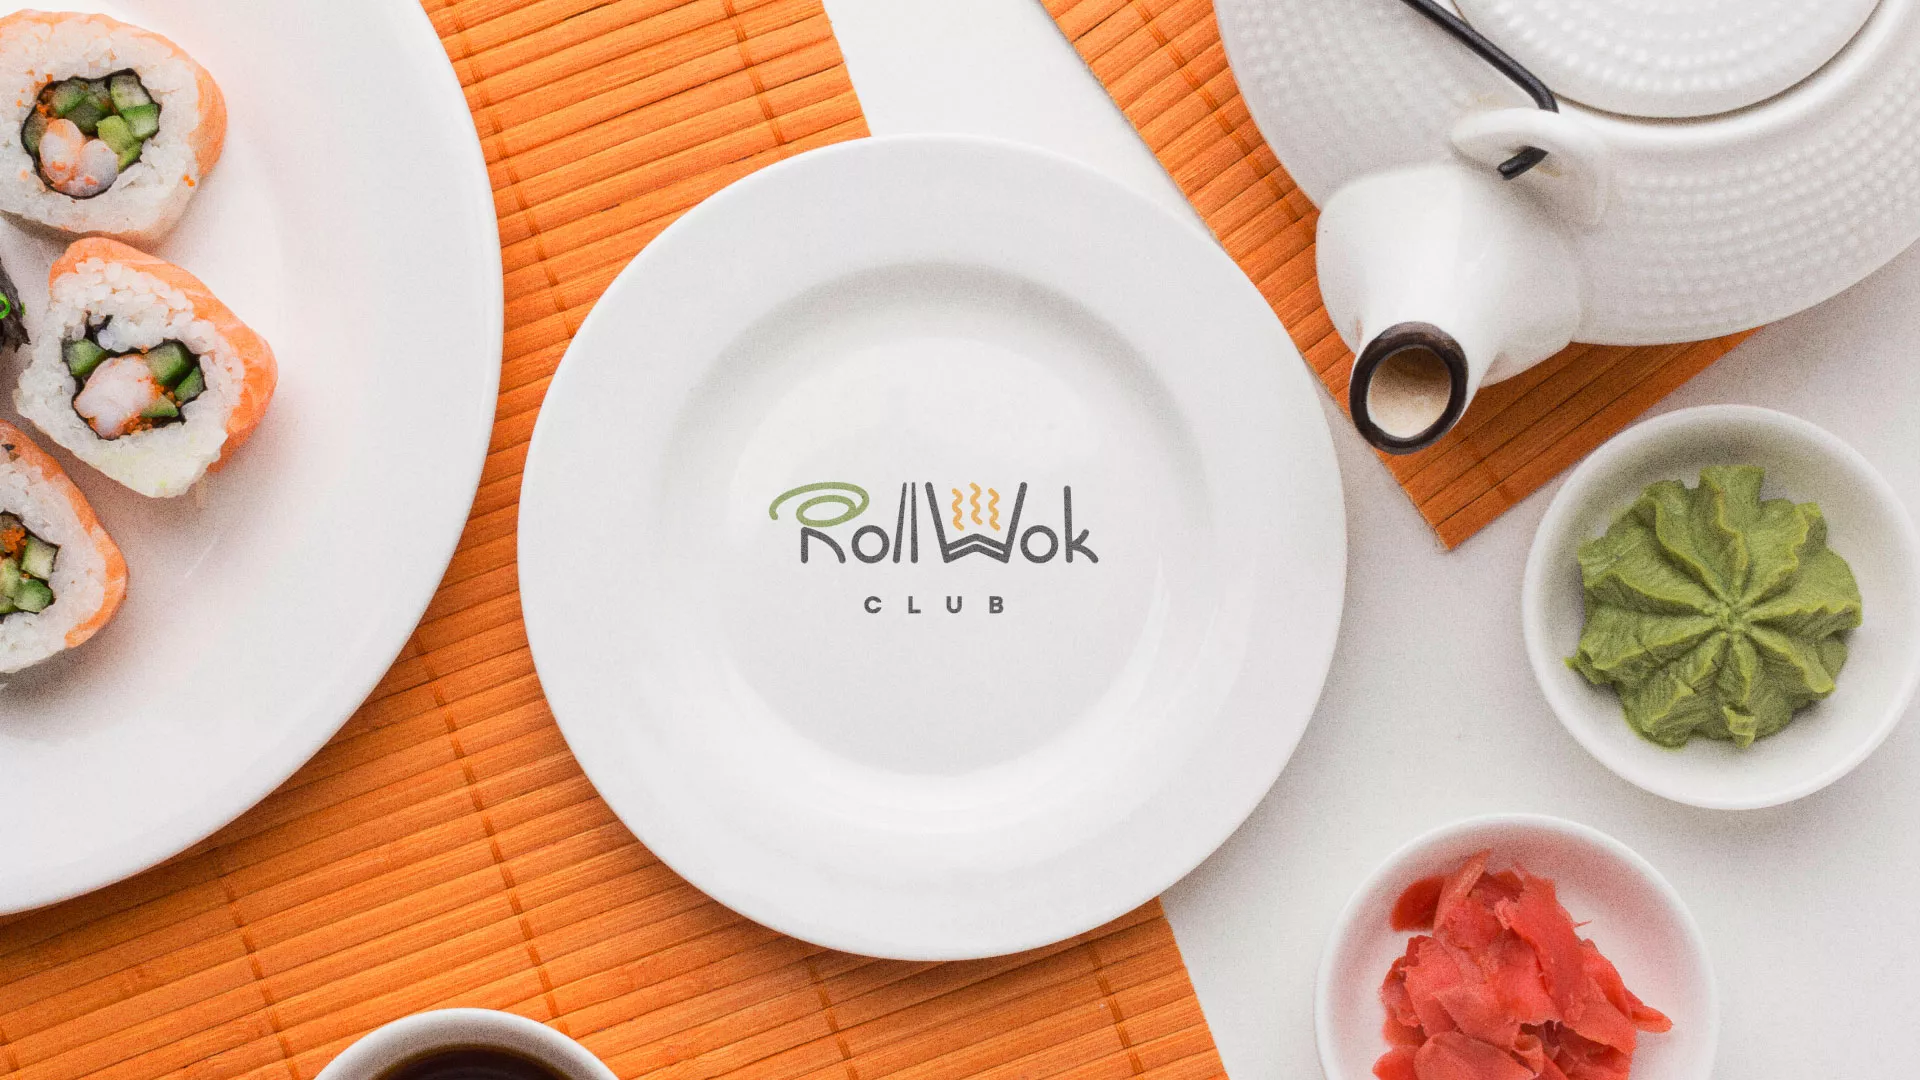 Разработка логотипа и фирменного стиля суши-бара «Roll Wok Club» в Кремёнках